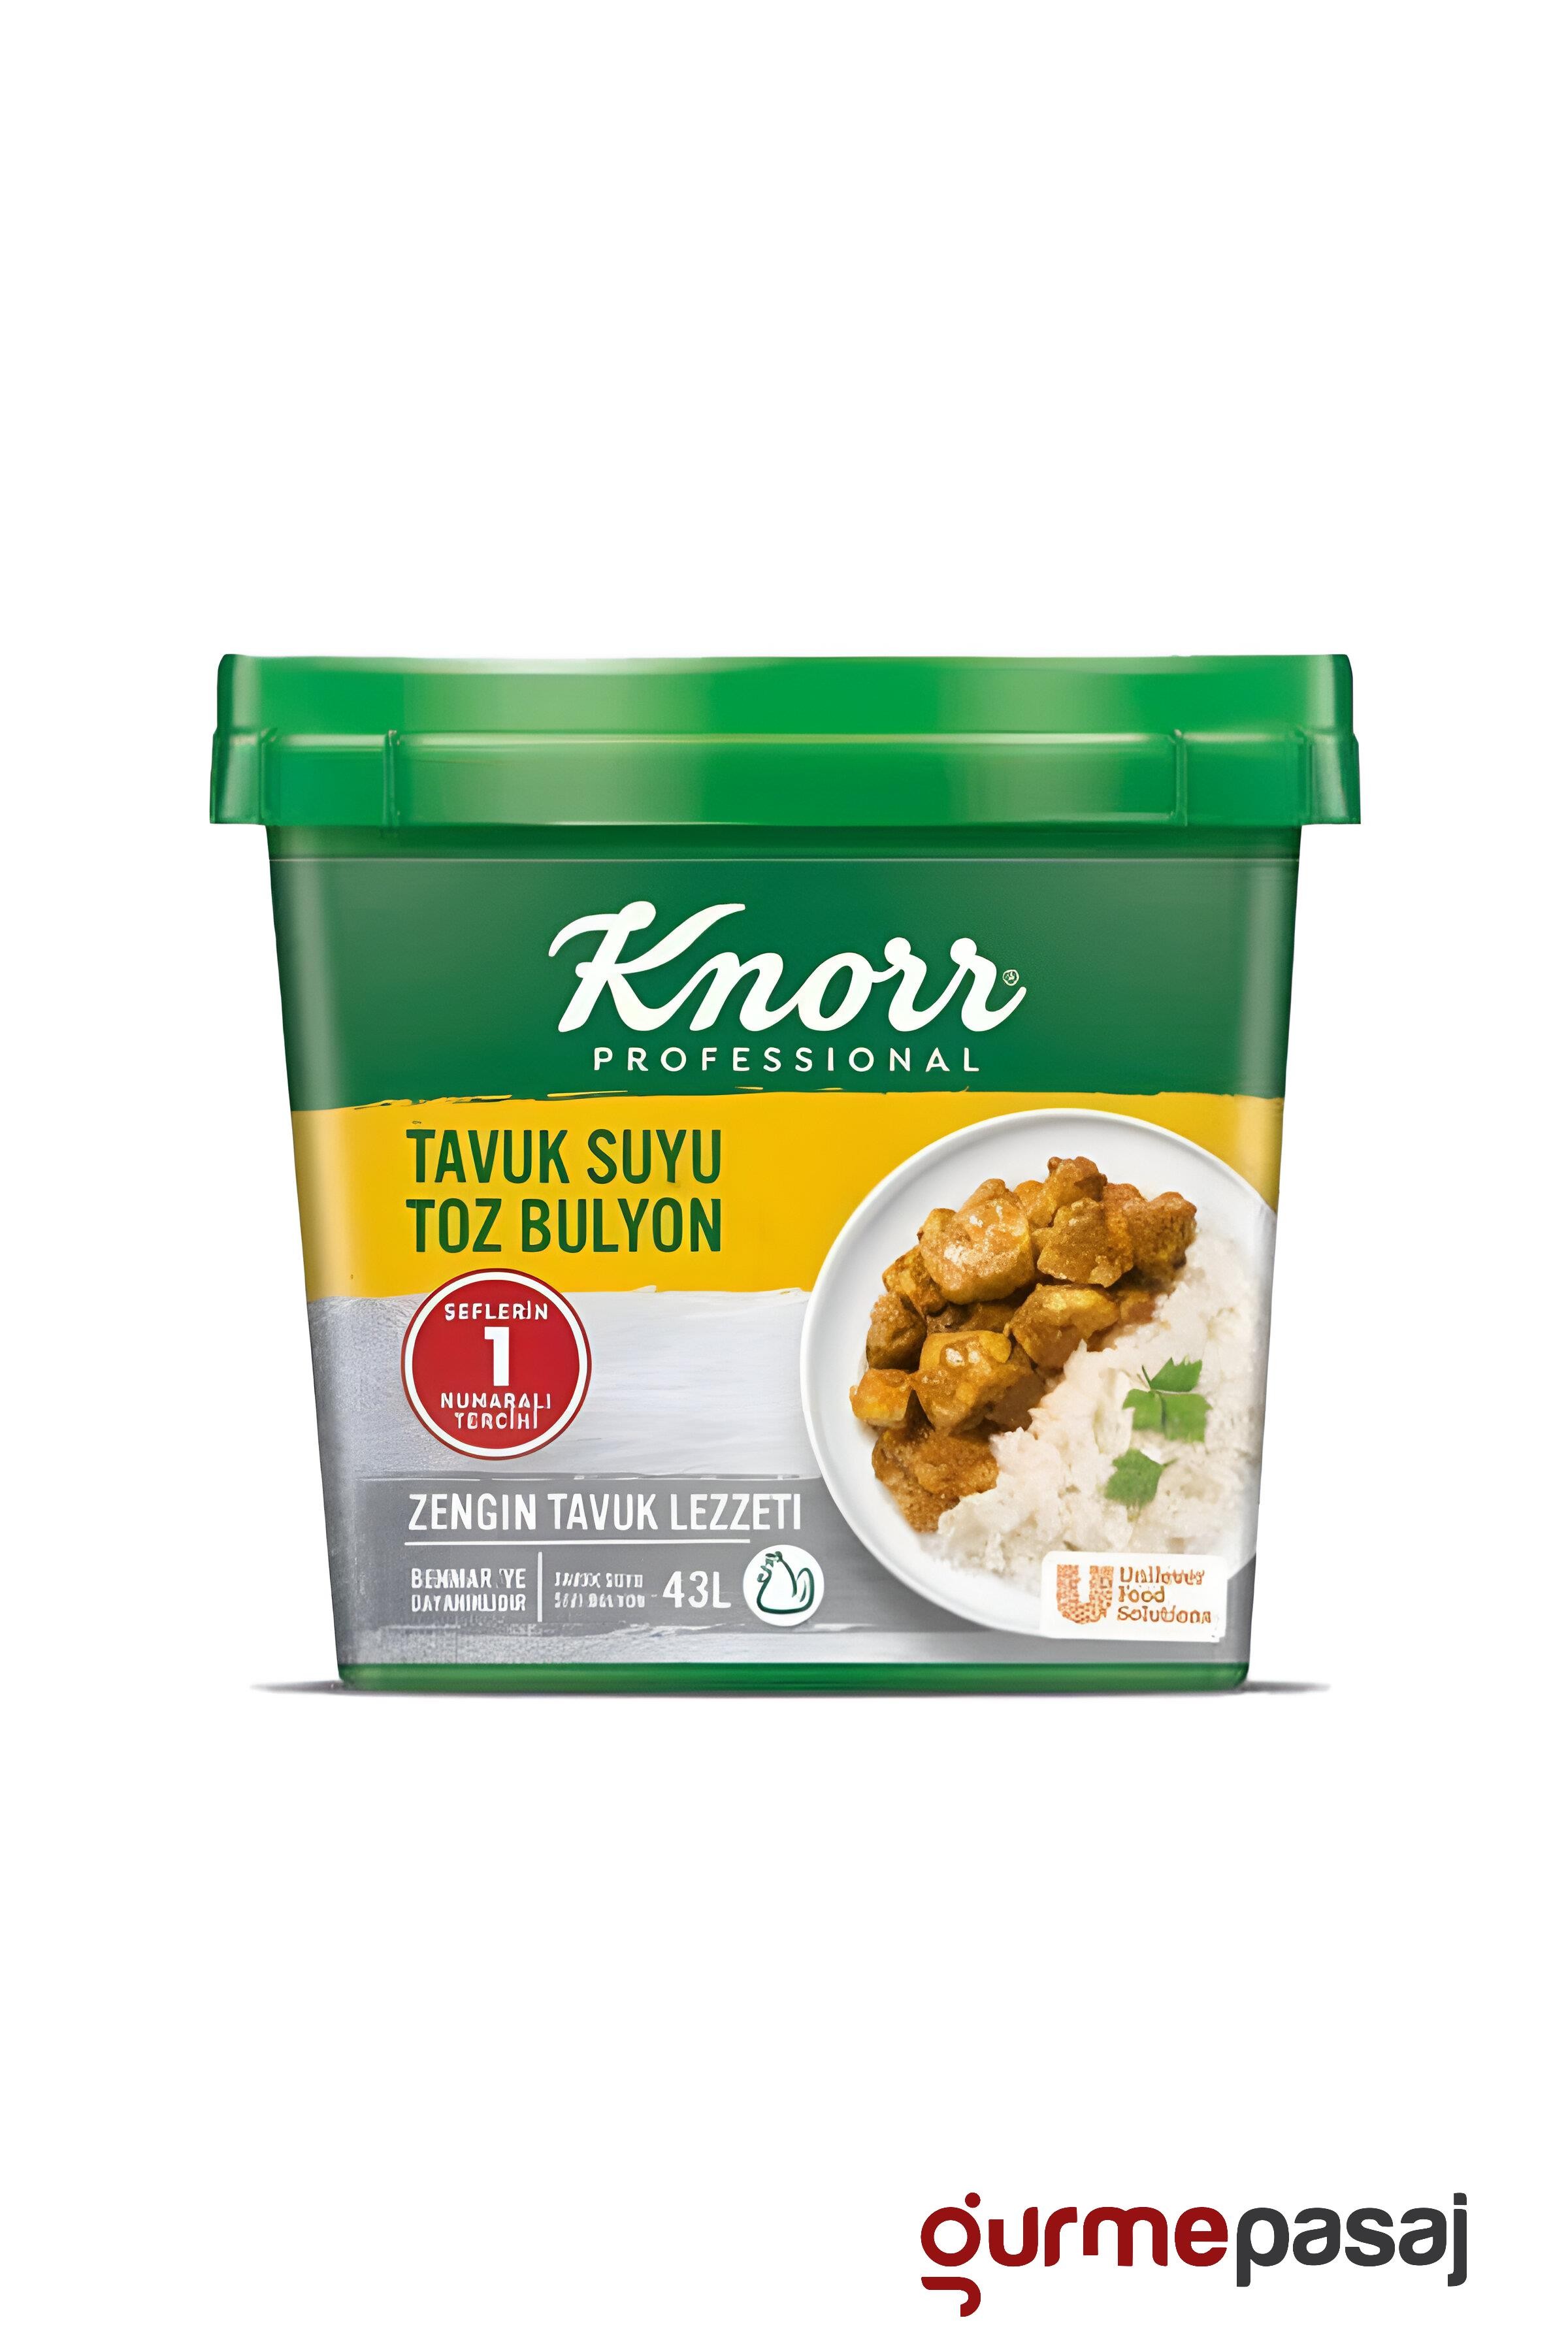 Knorr Tavuk Suyu Toz Bulyon 750 G x 6 Adet (Koli)